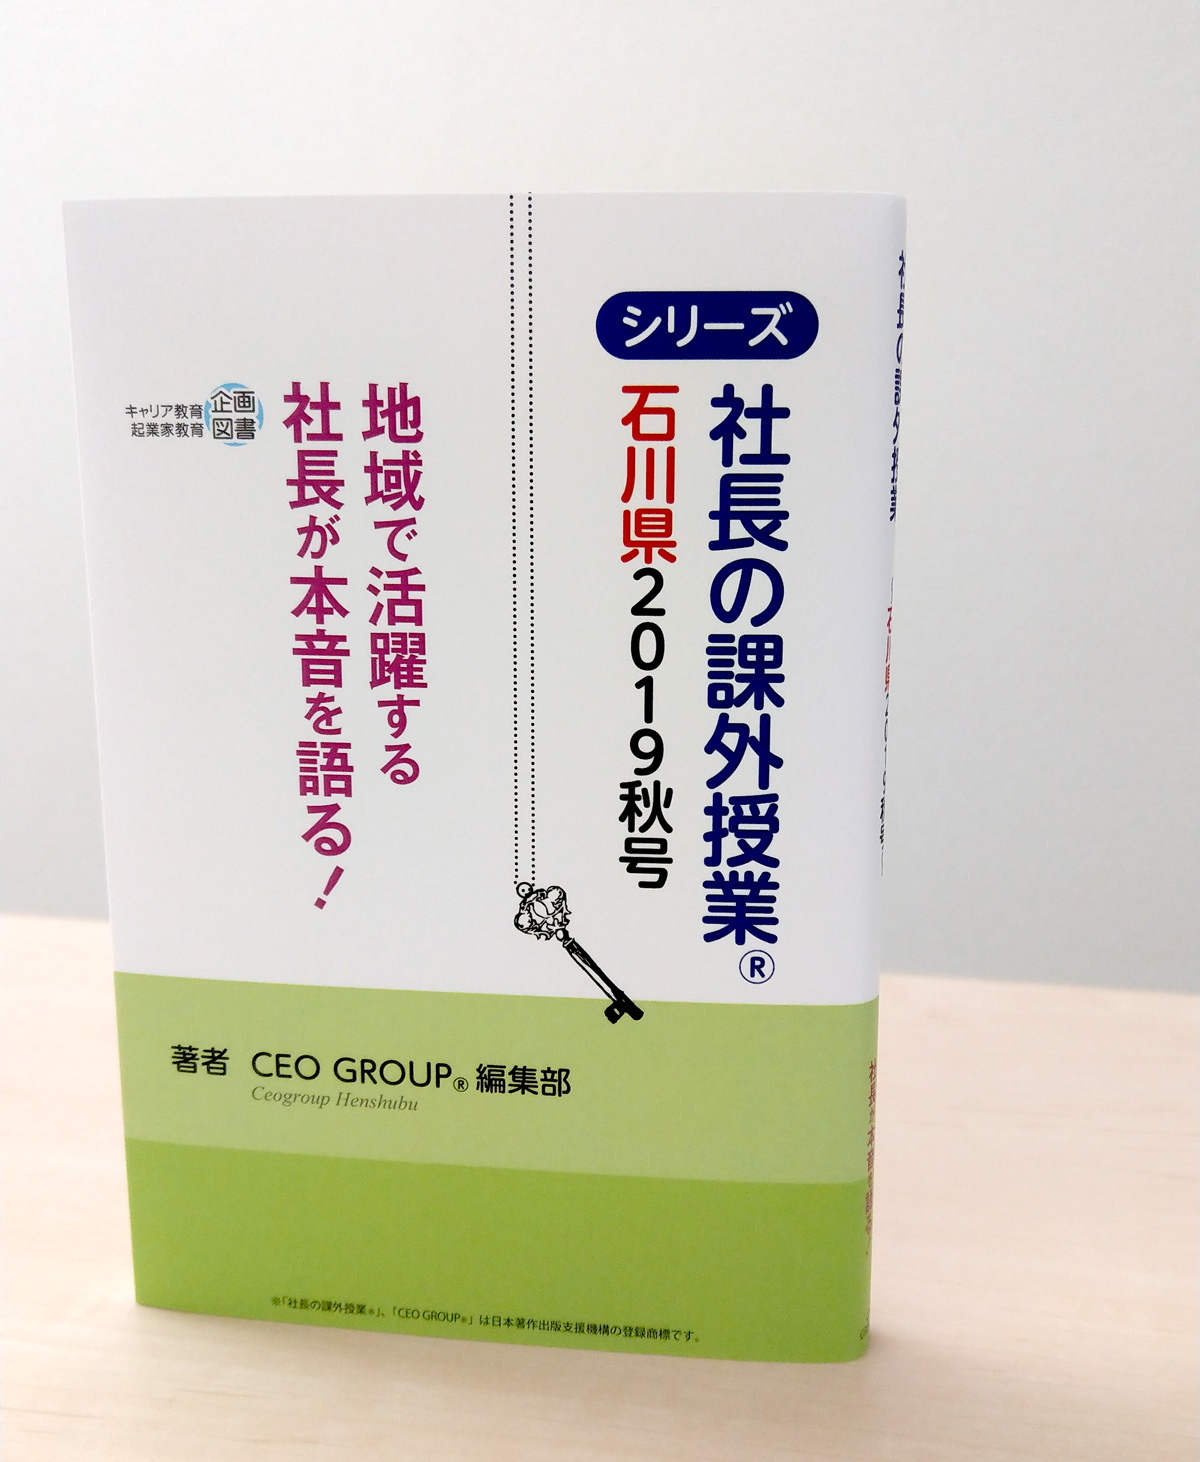 「社長の課外授業®石川県版」が発刊されます